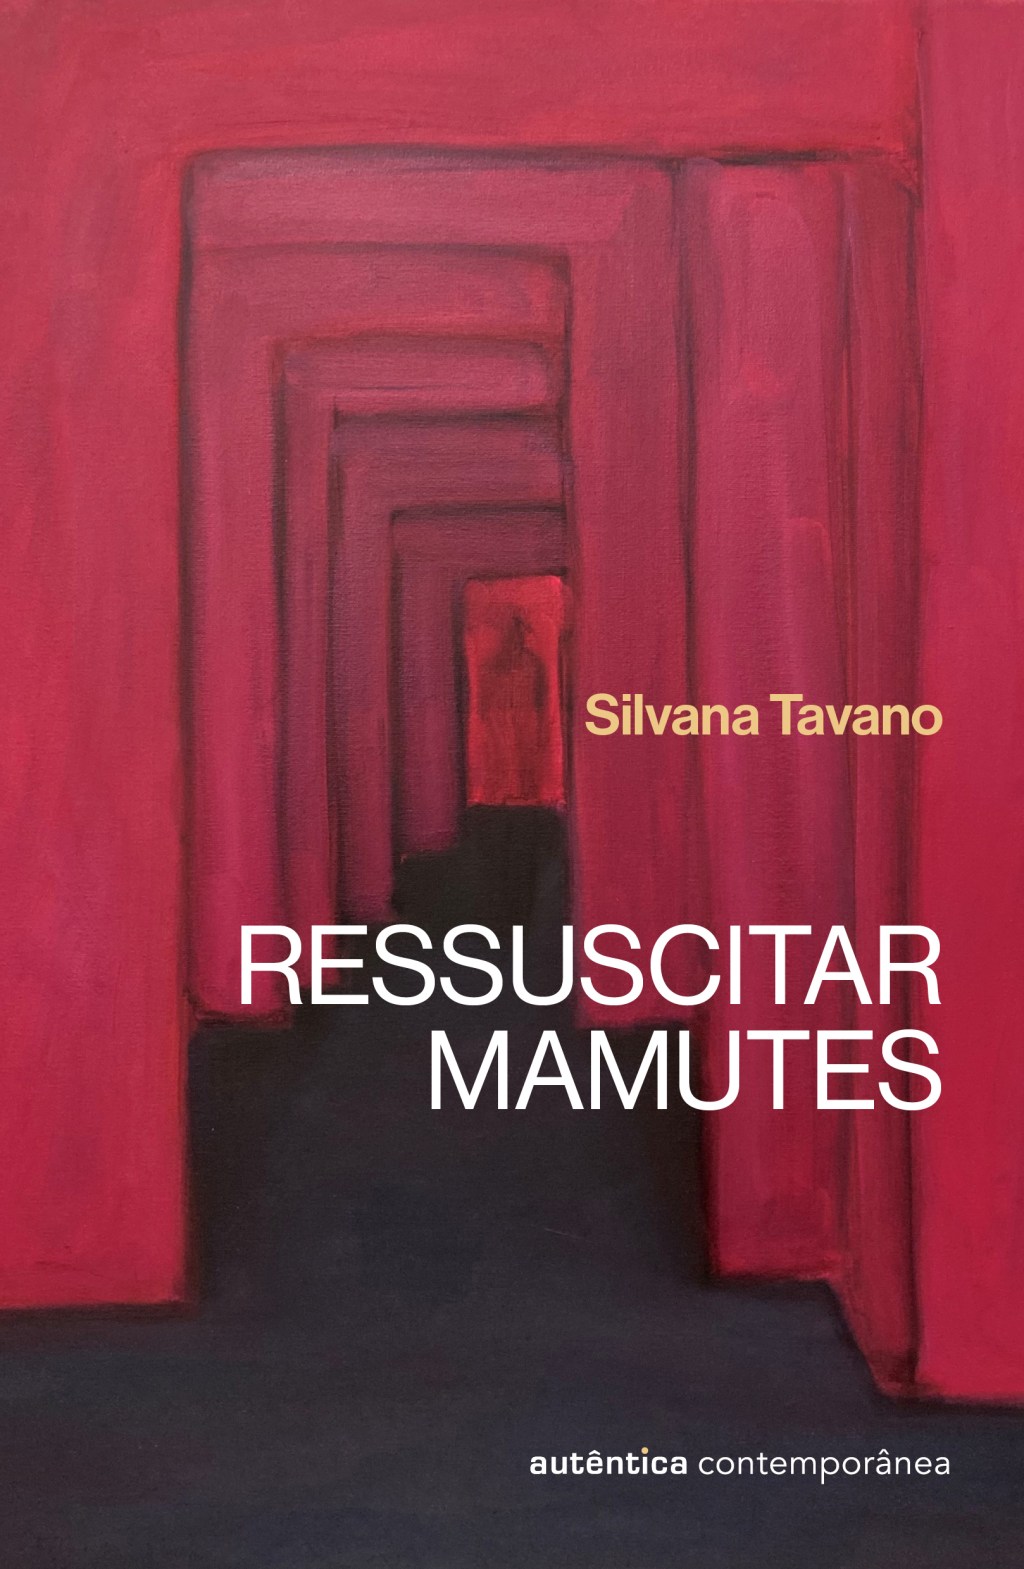 Silvana-Tavano